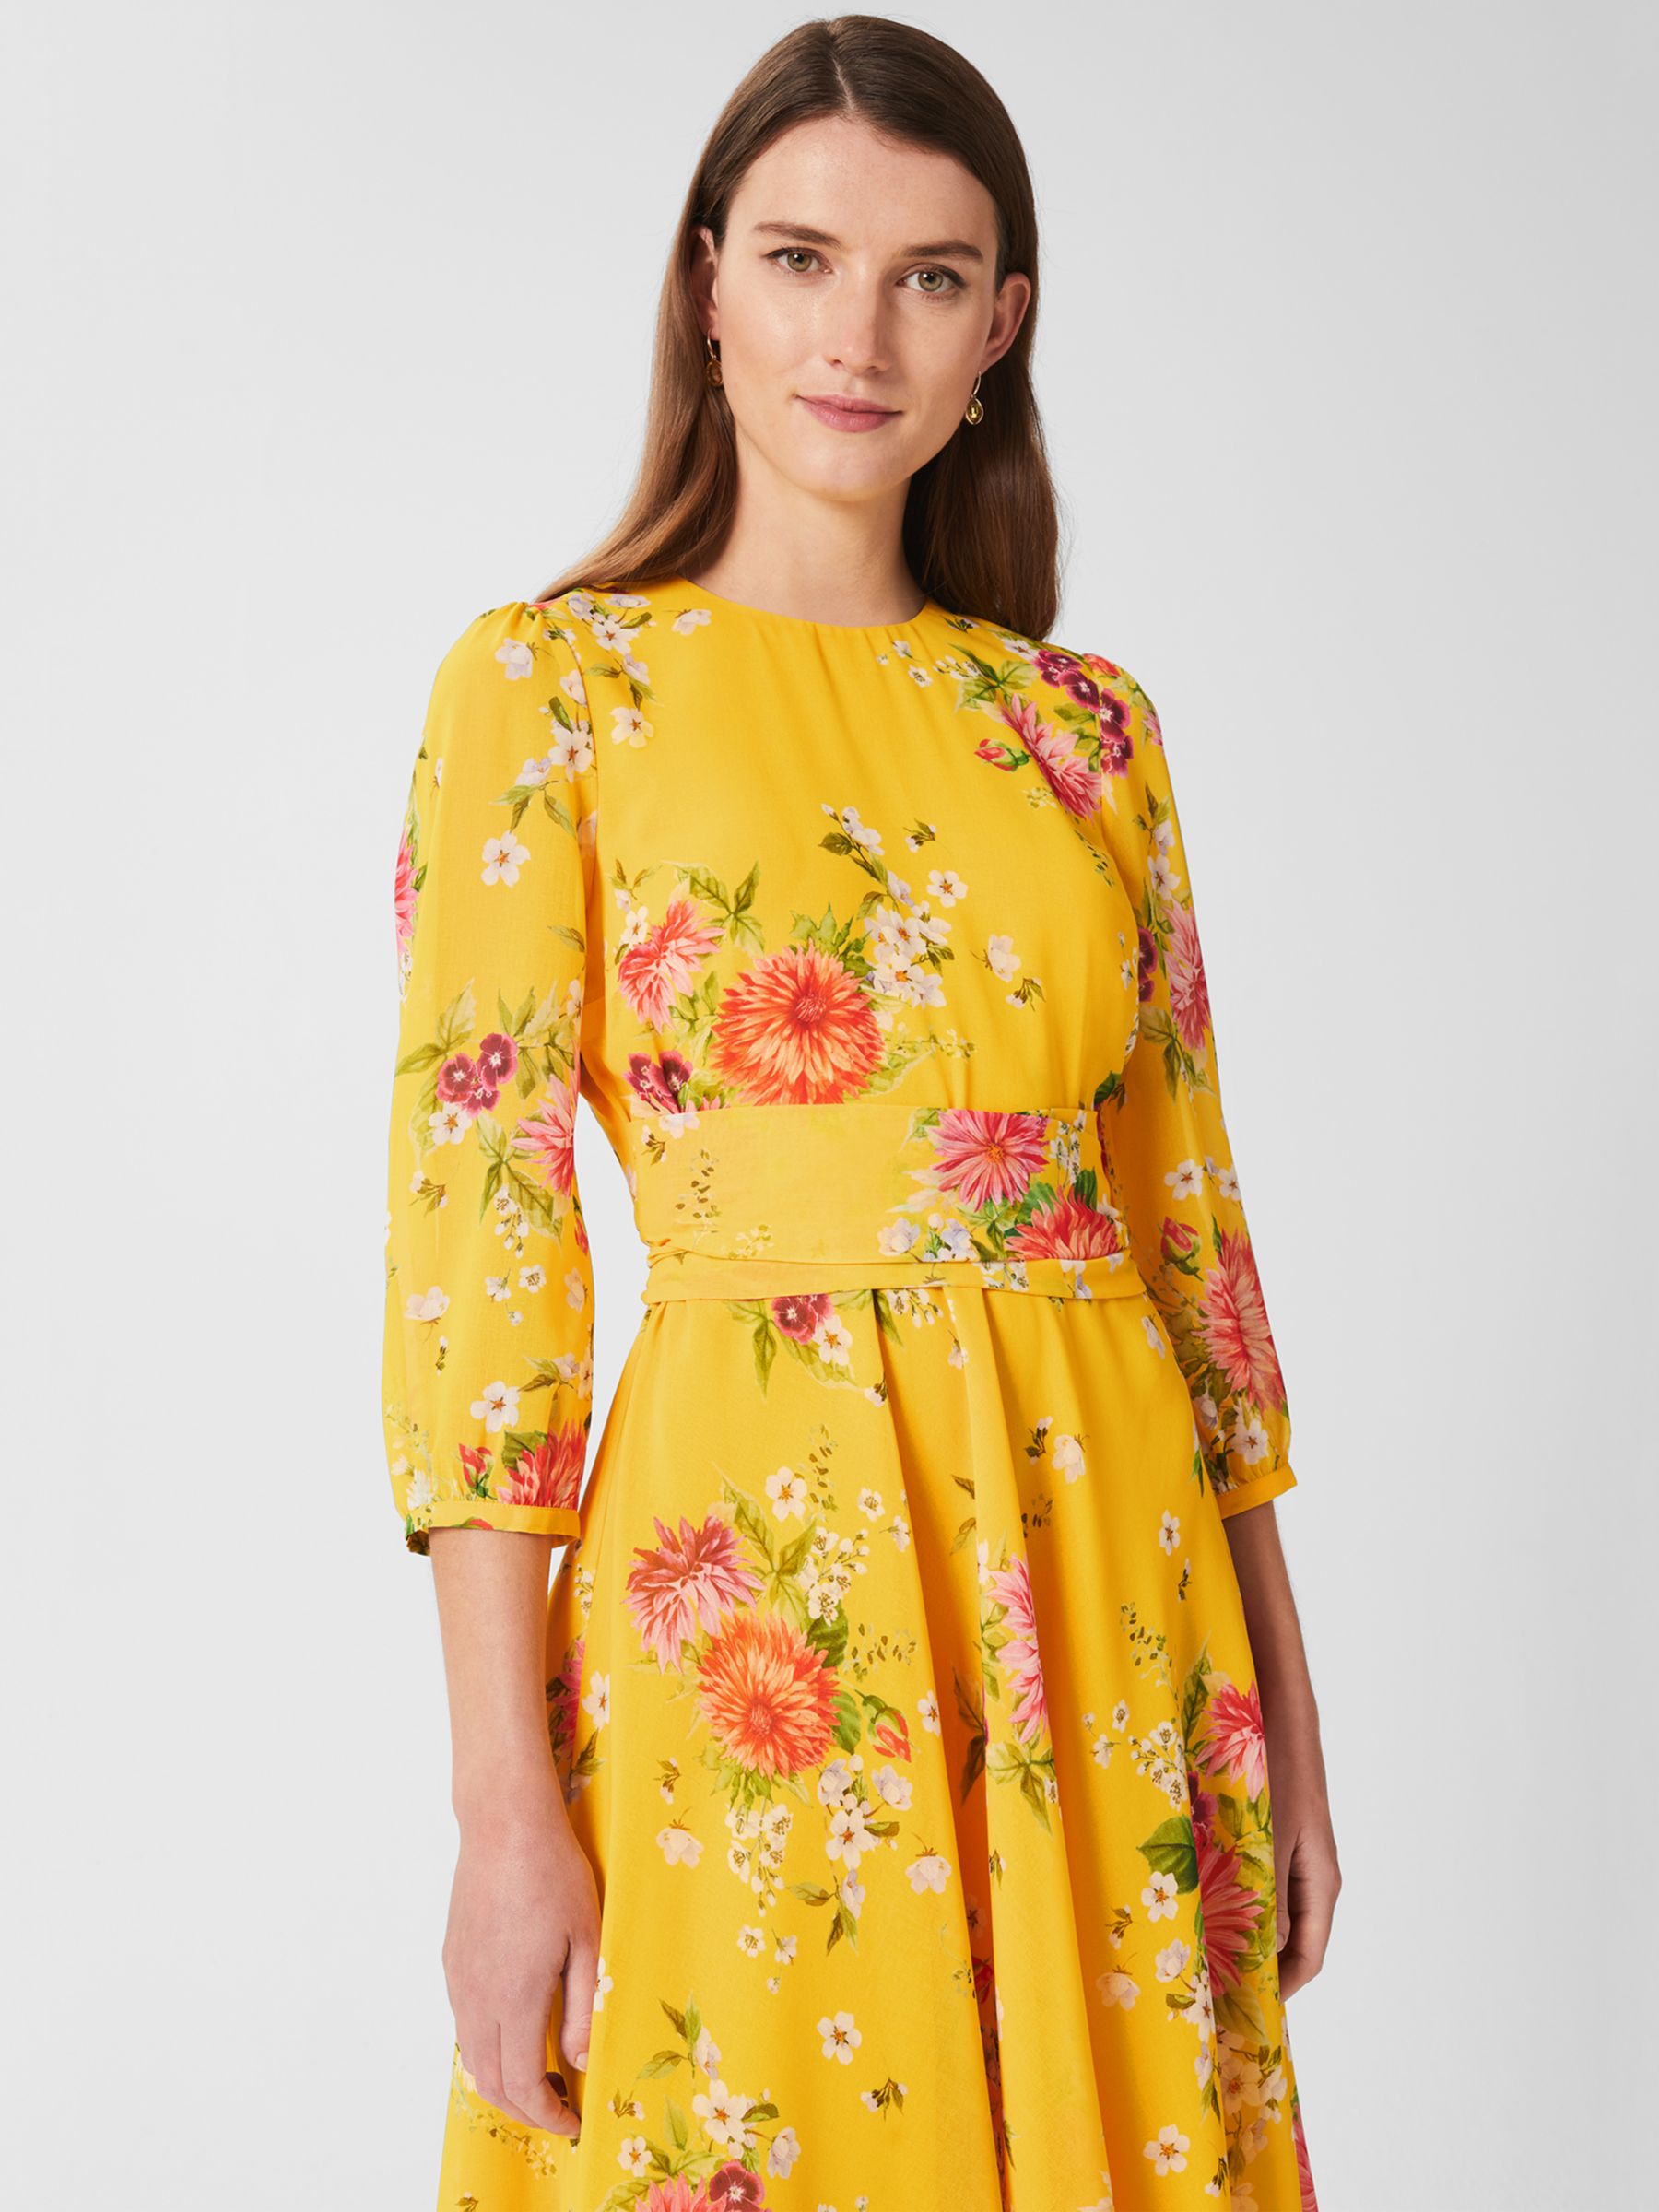 Hobbs Jasmina Floral Print Dress, Yellow at John Lewis & Partners